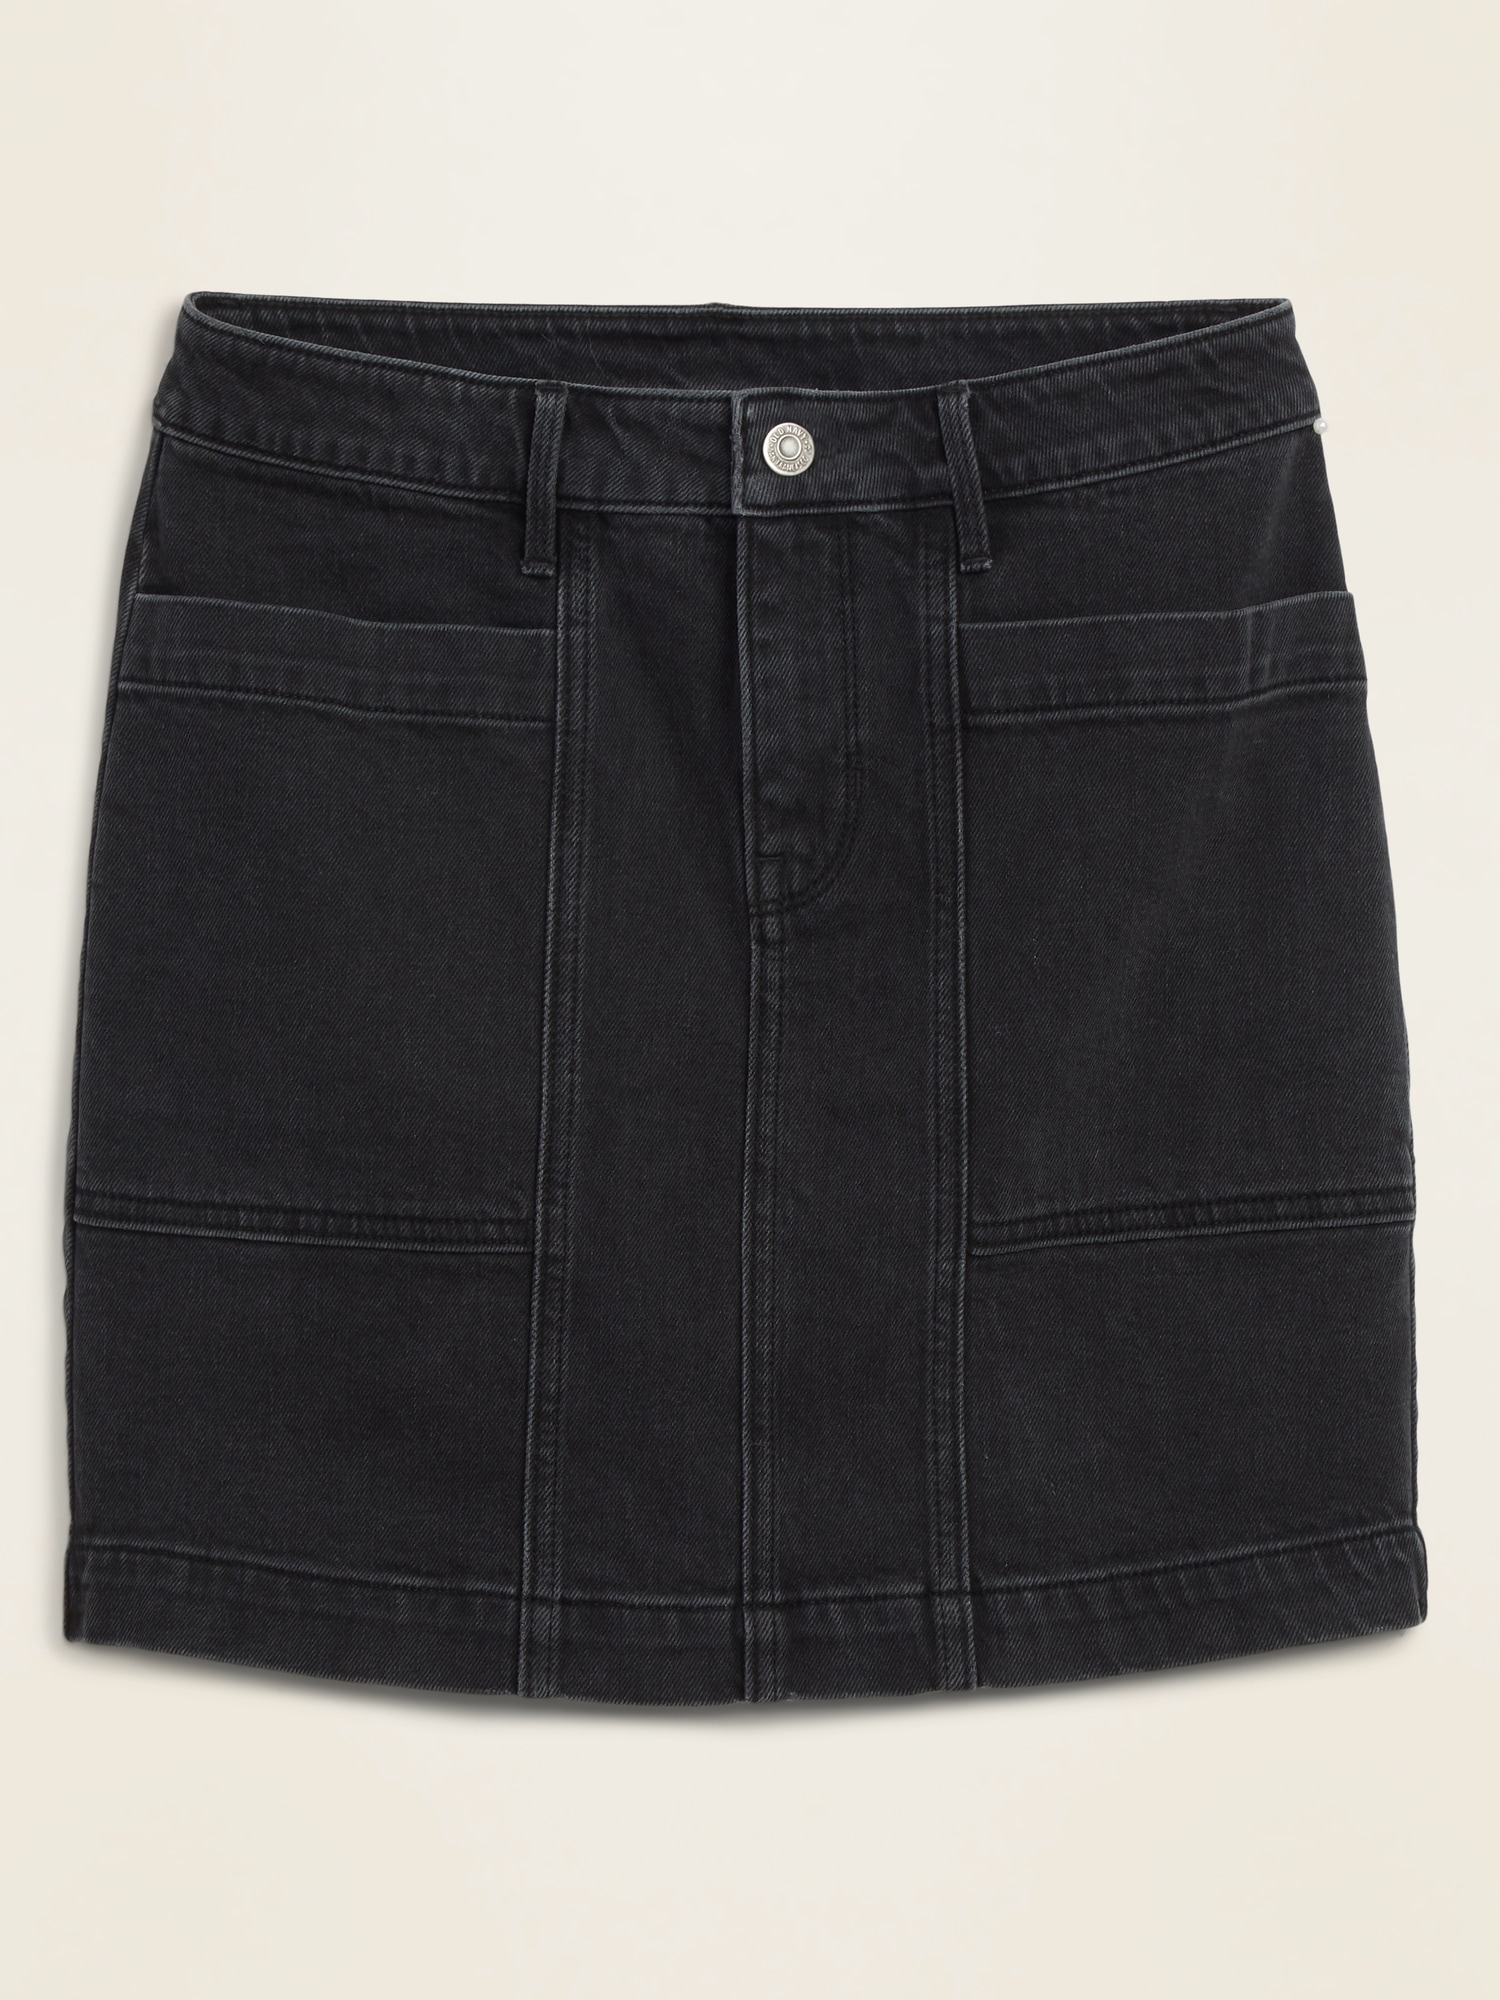 long black jean skirt